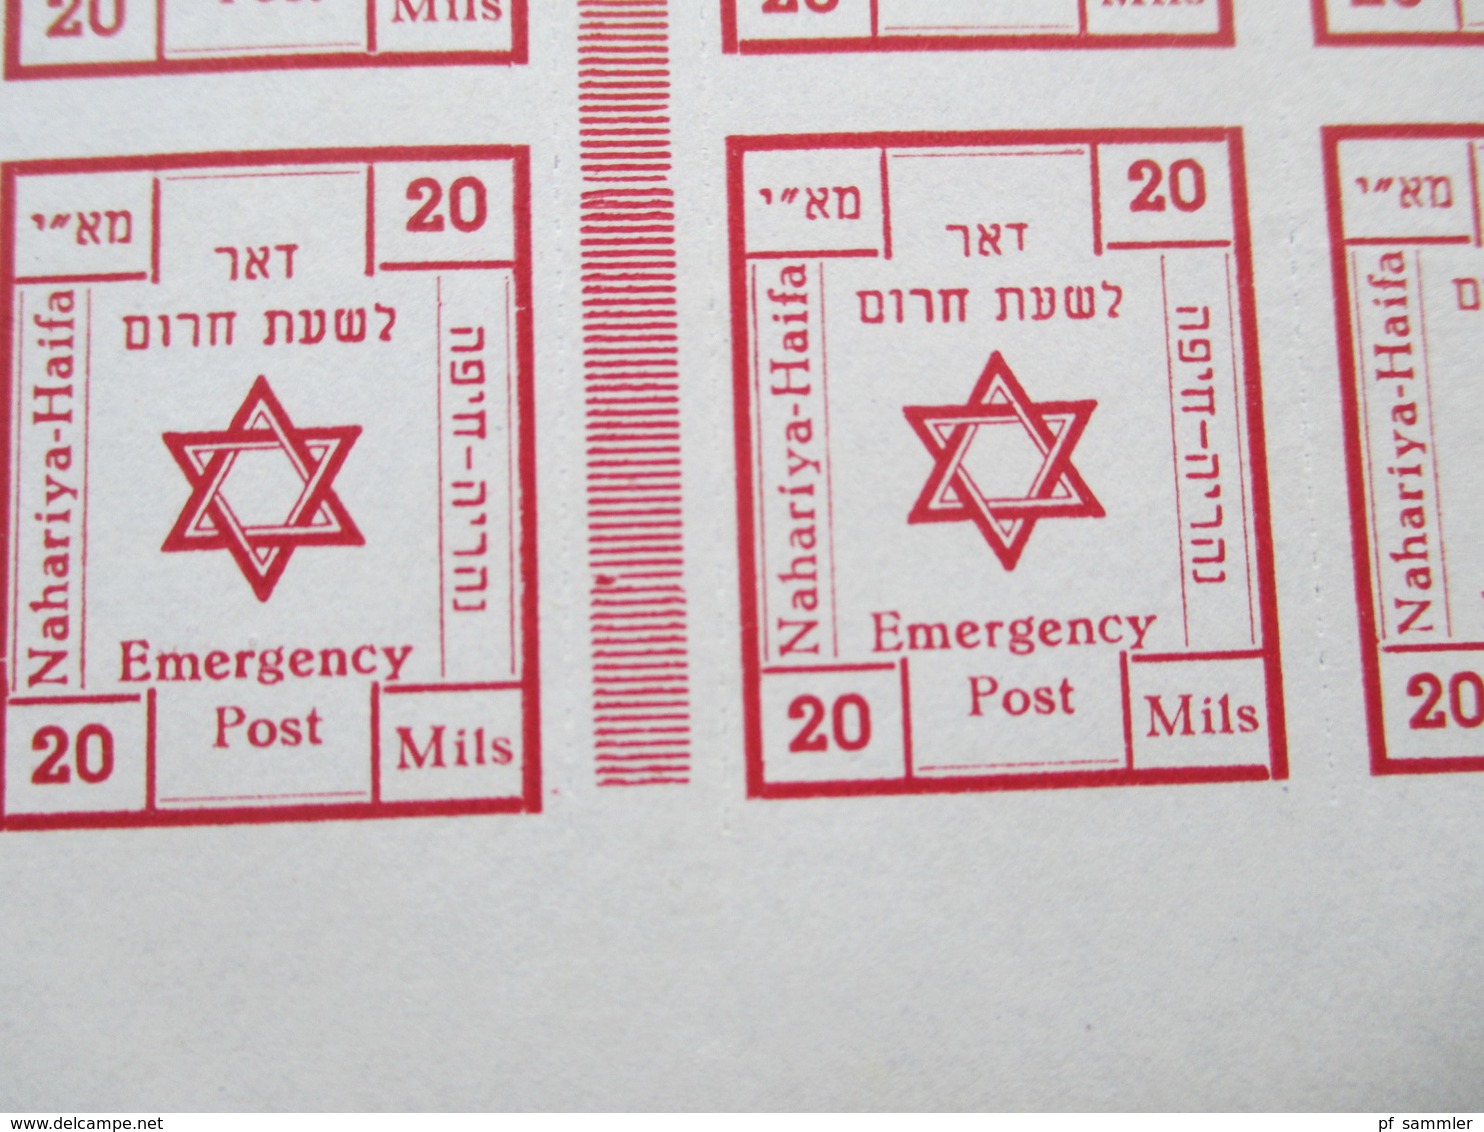 Palästina / Israel 1948 Interimspost 8er Zwischenstegblock Nahariya Emergency Post Sehr Selten Angeboten!! RRR - Ungebraucht (ohne Tabs)